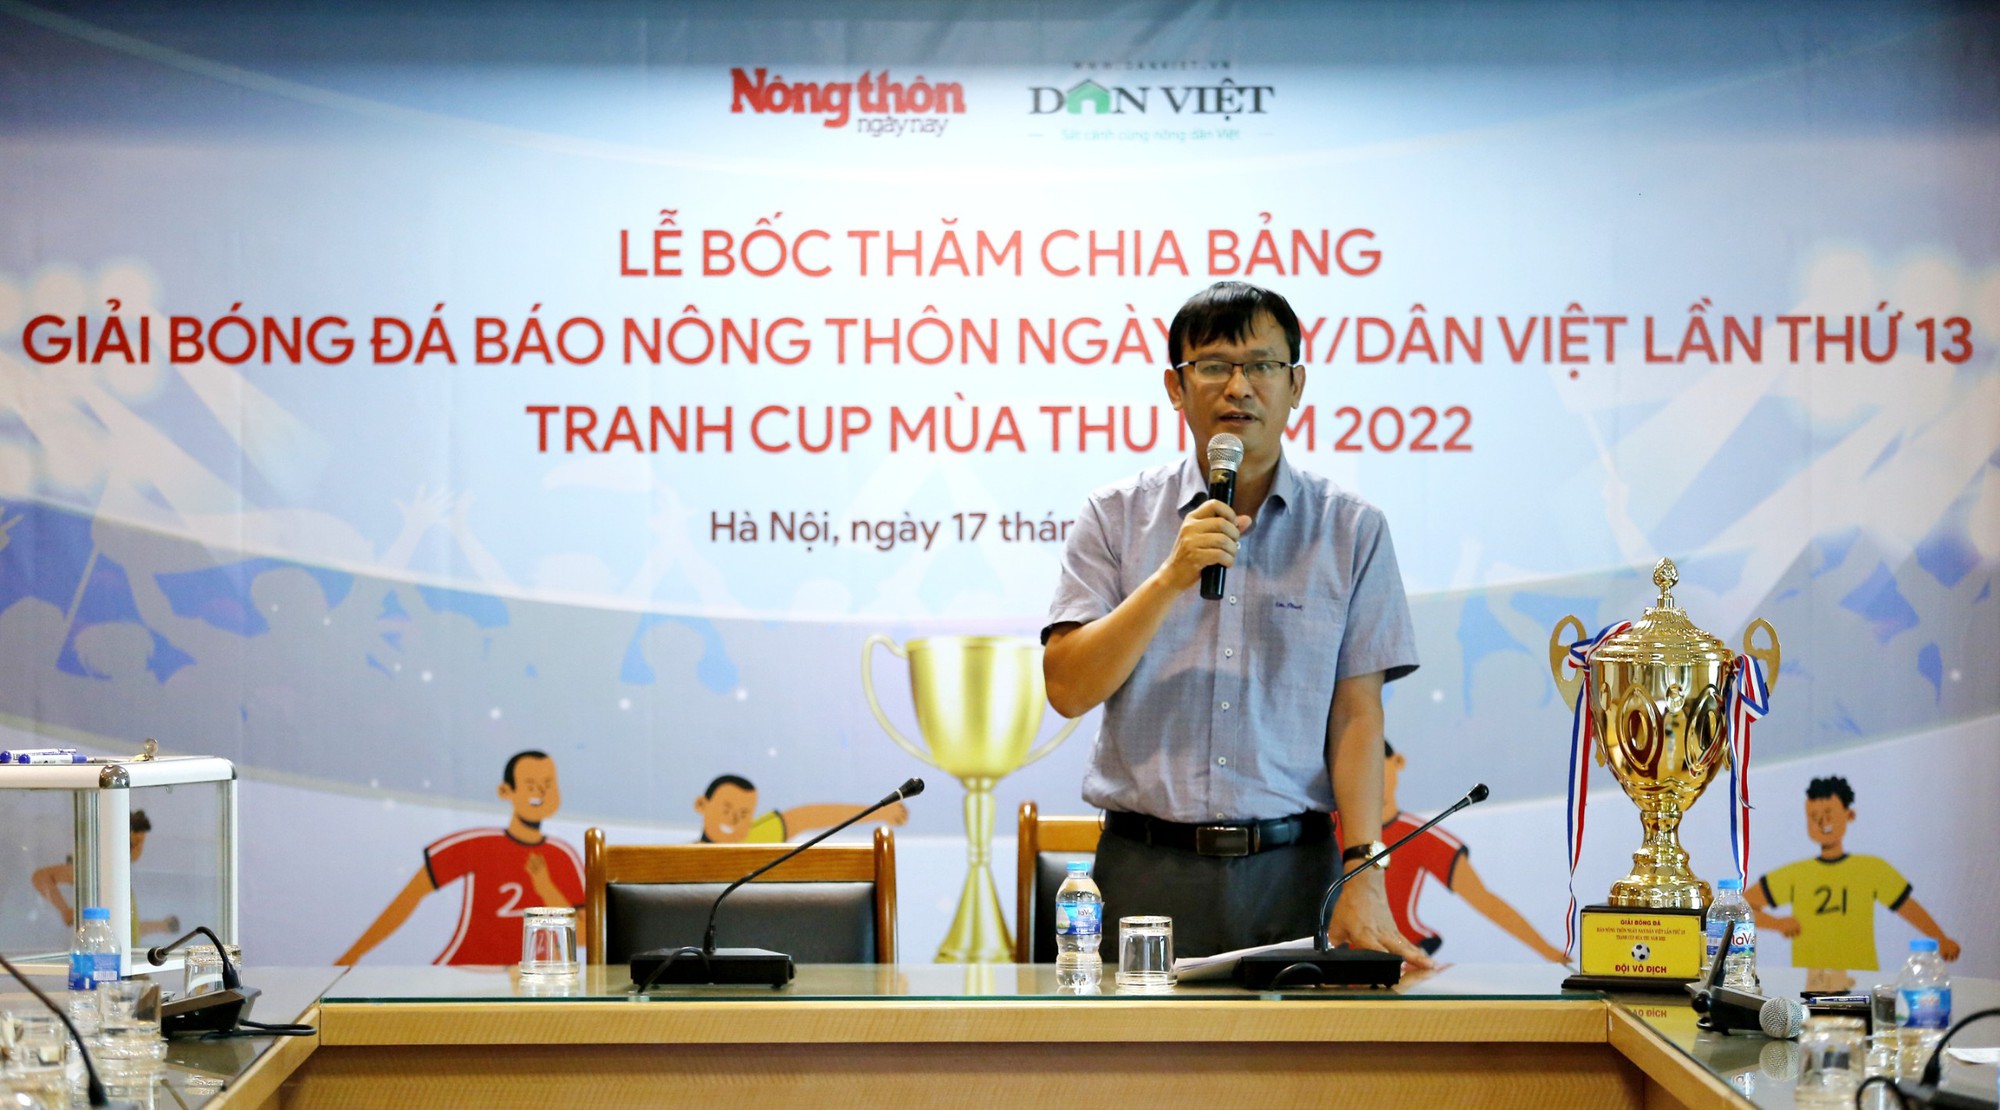 Chia bảng Giải bóng đá báo Báo NTNN/Dân Việt lần thứ 13 – tranh Cúp Mùa Thu 2022: Chủ nhà cùng bảng Vnexpress, Lao Động - Ảnh 3.